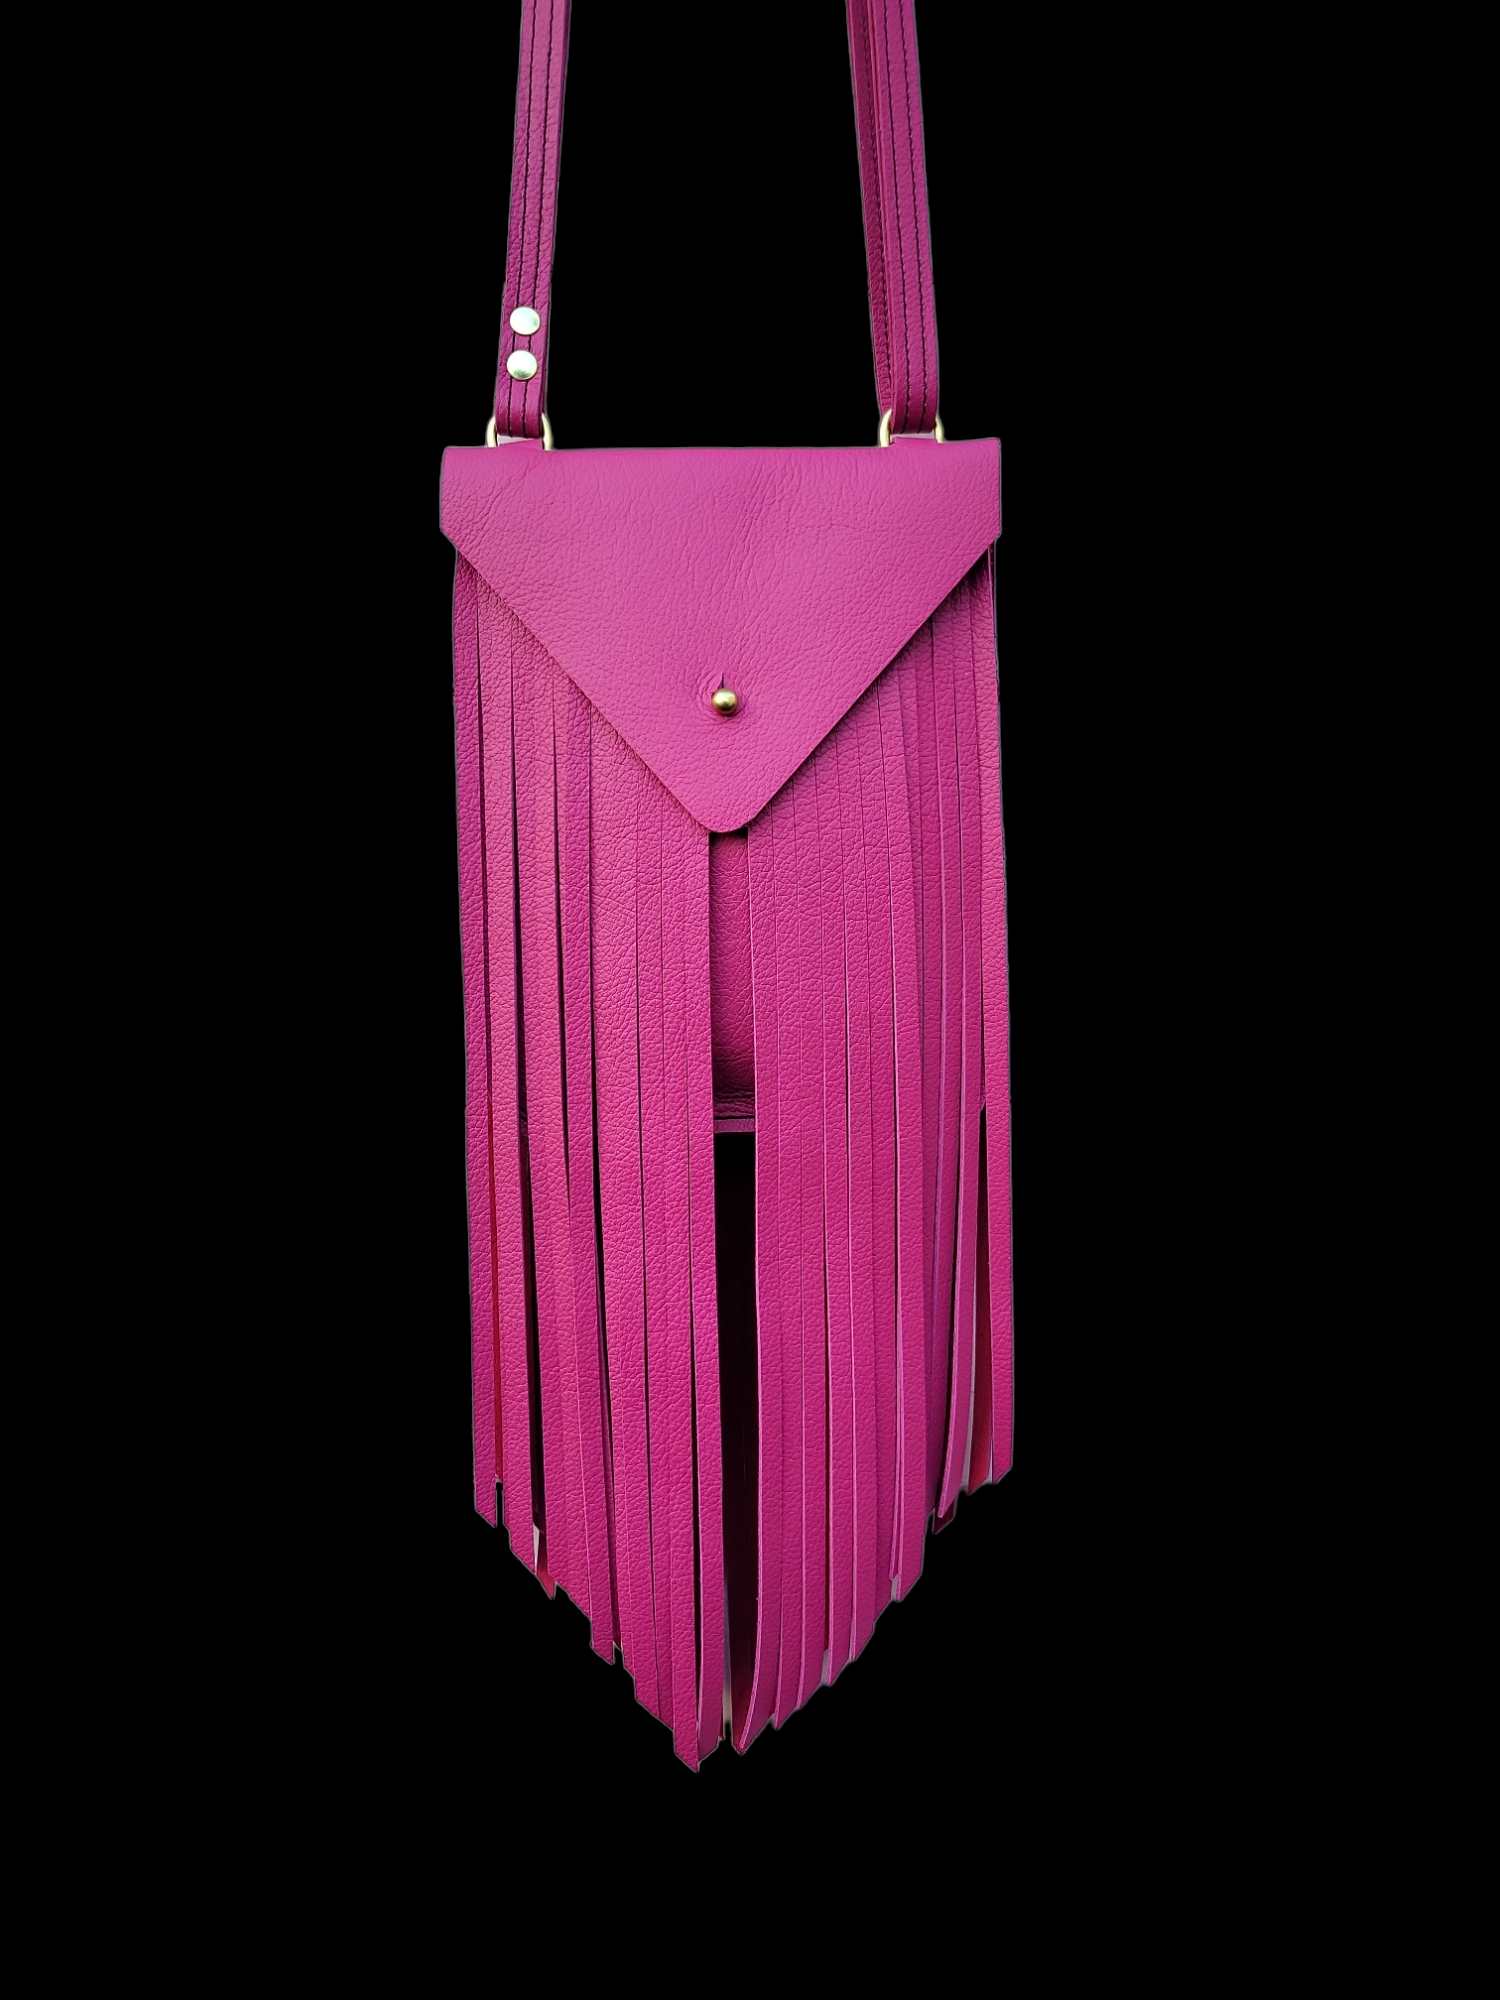 pink fringe purse